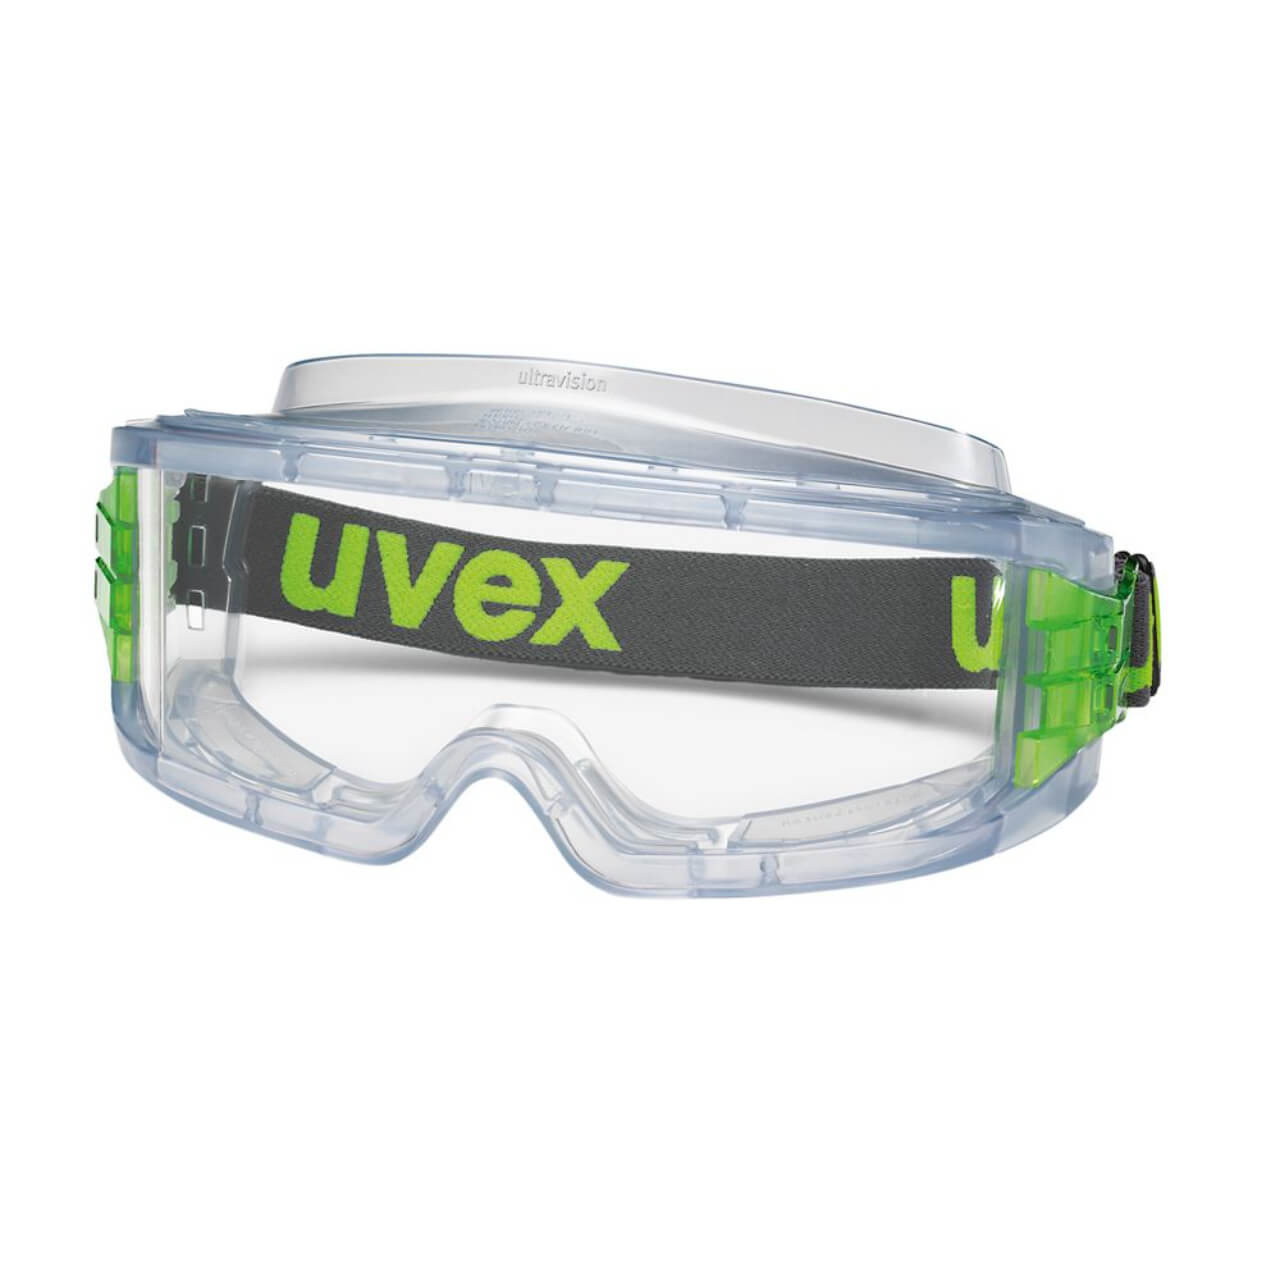 Uvex Ultravision AF Clear Safety Goggles, Transparent Vented Frame